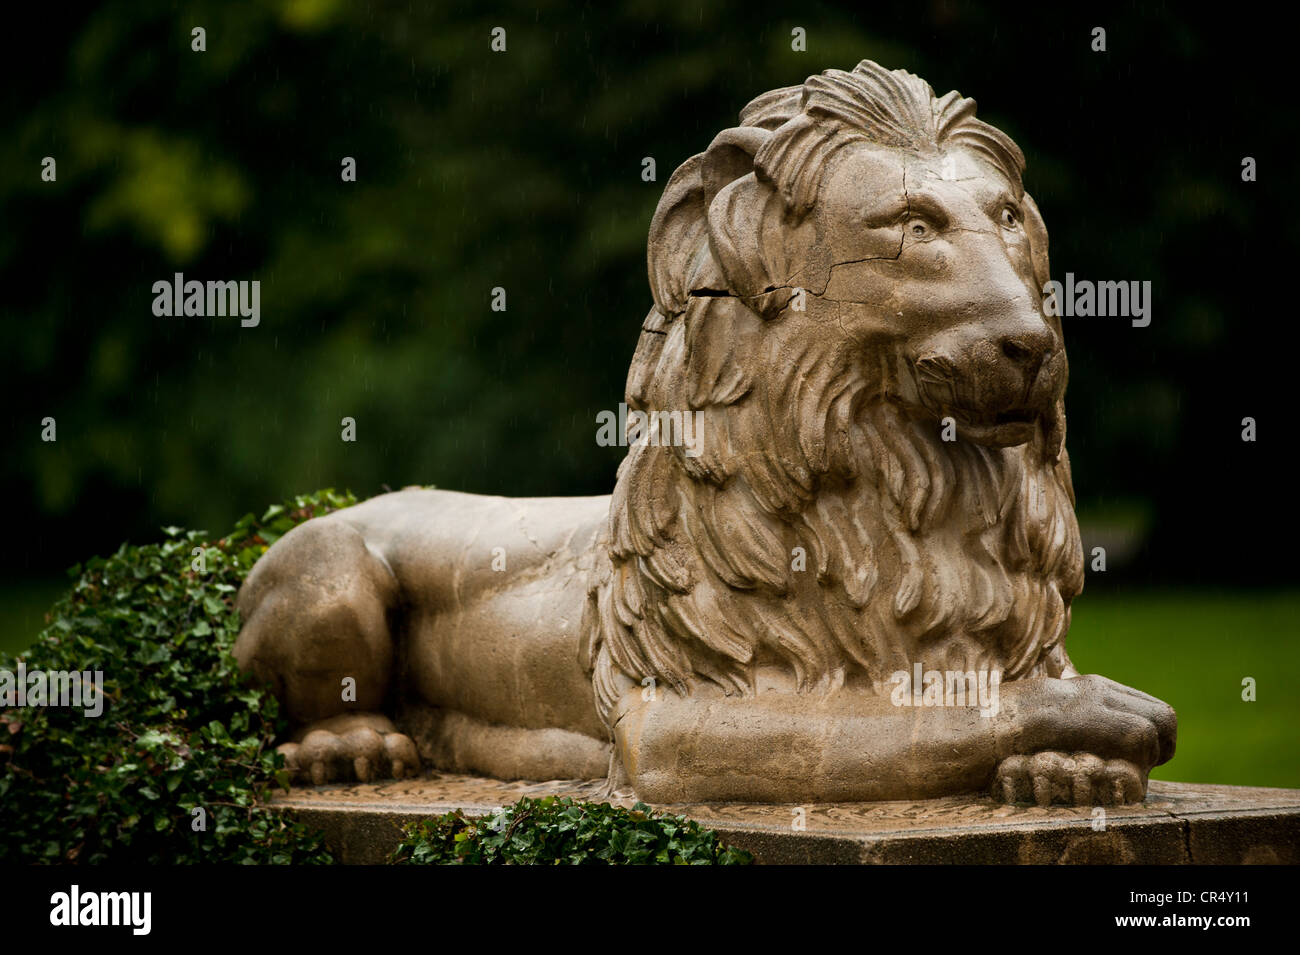 Lion sculpture, Lancut Castle, Landshut, Lancut, Subcarpathian province, Poland, Europe Stock Photo